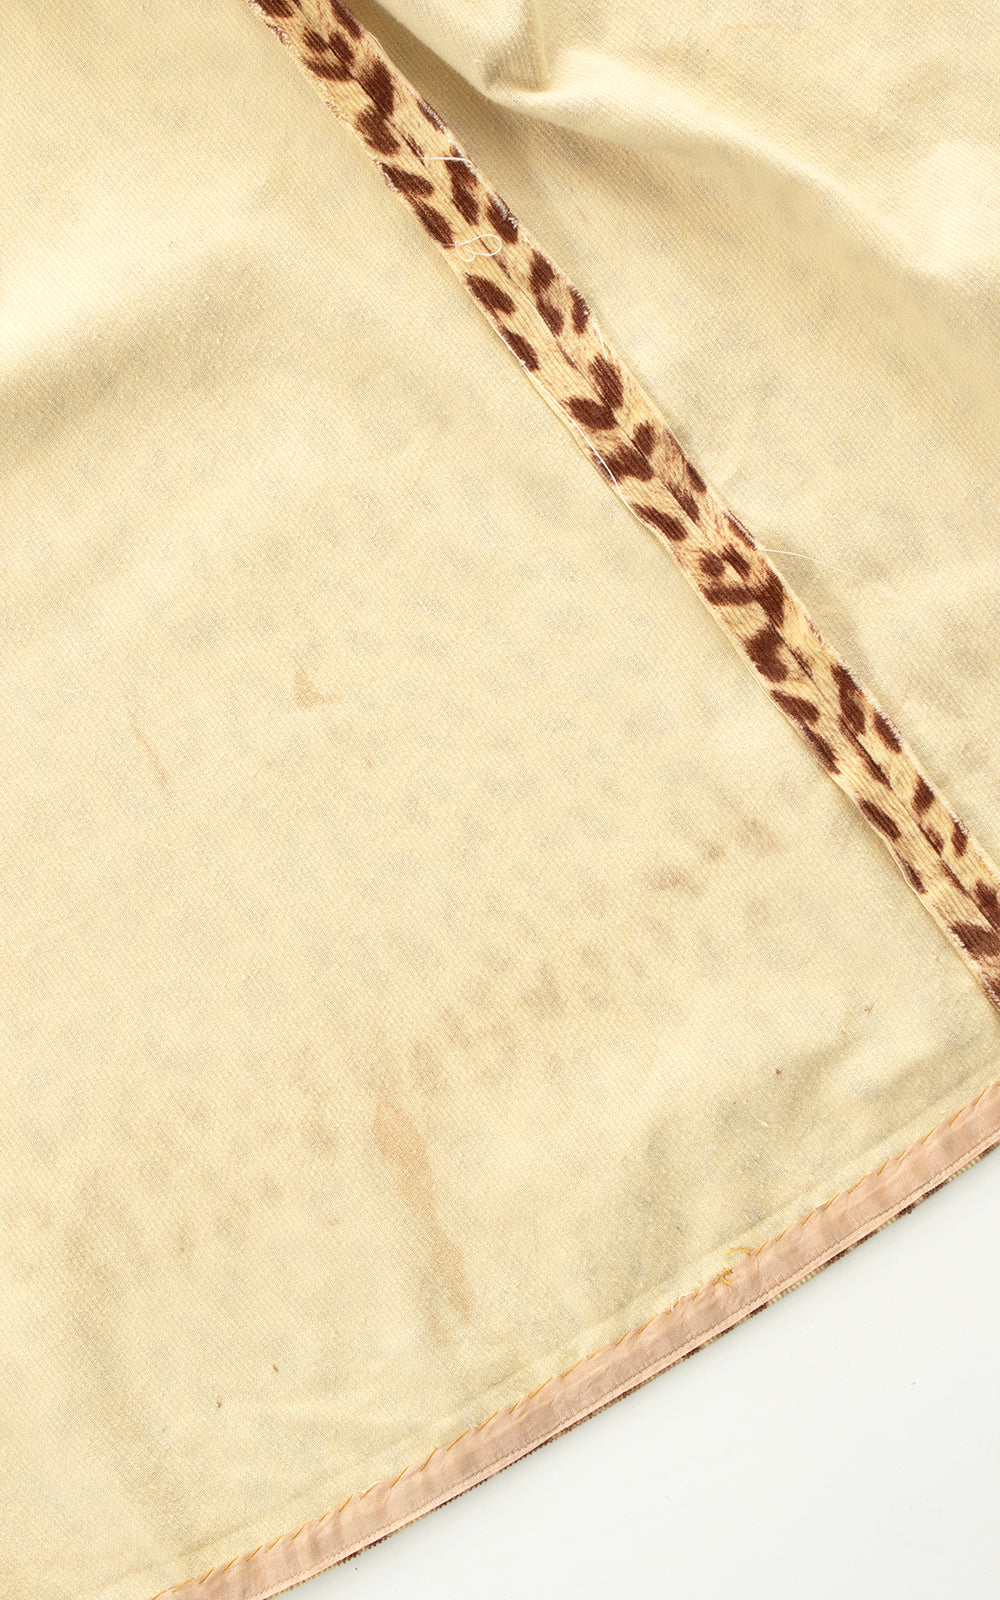 BLV x DEANNA || 1950s Leopard Print Corduroy Skirt | small